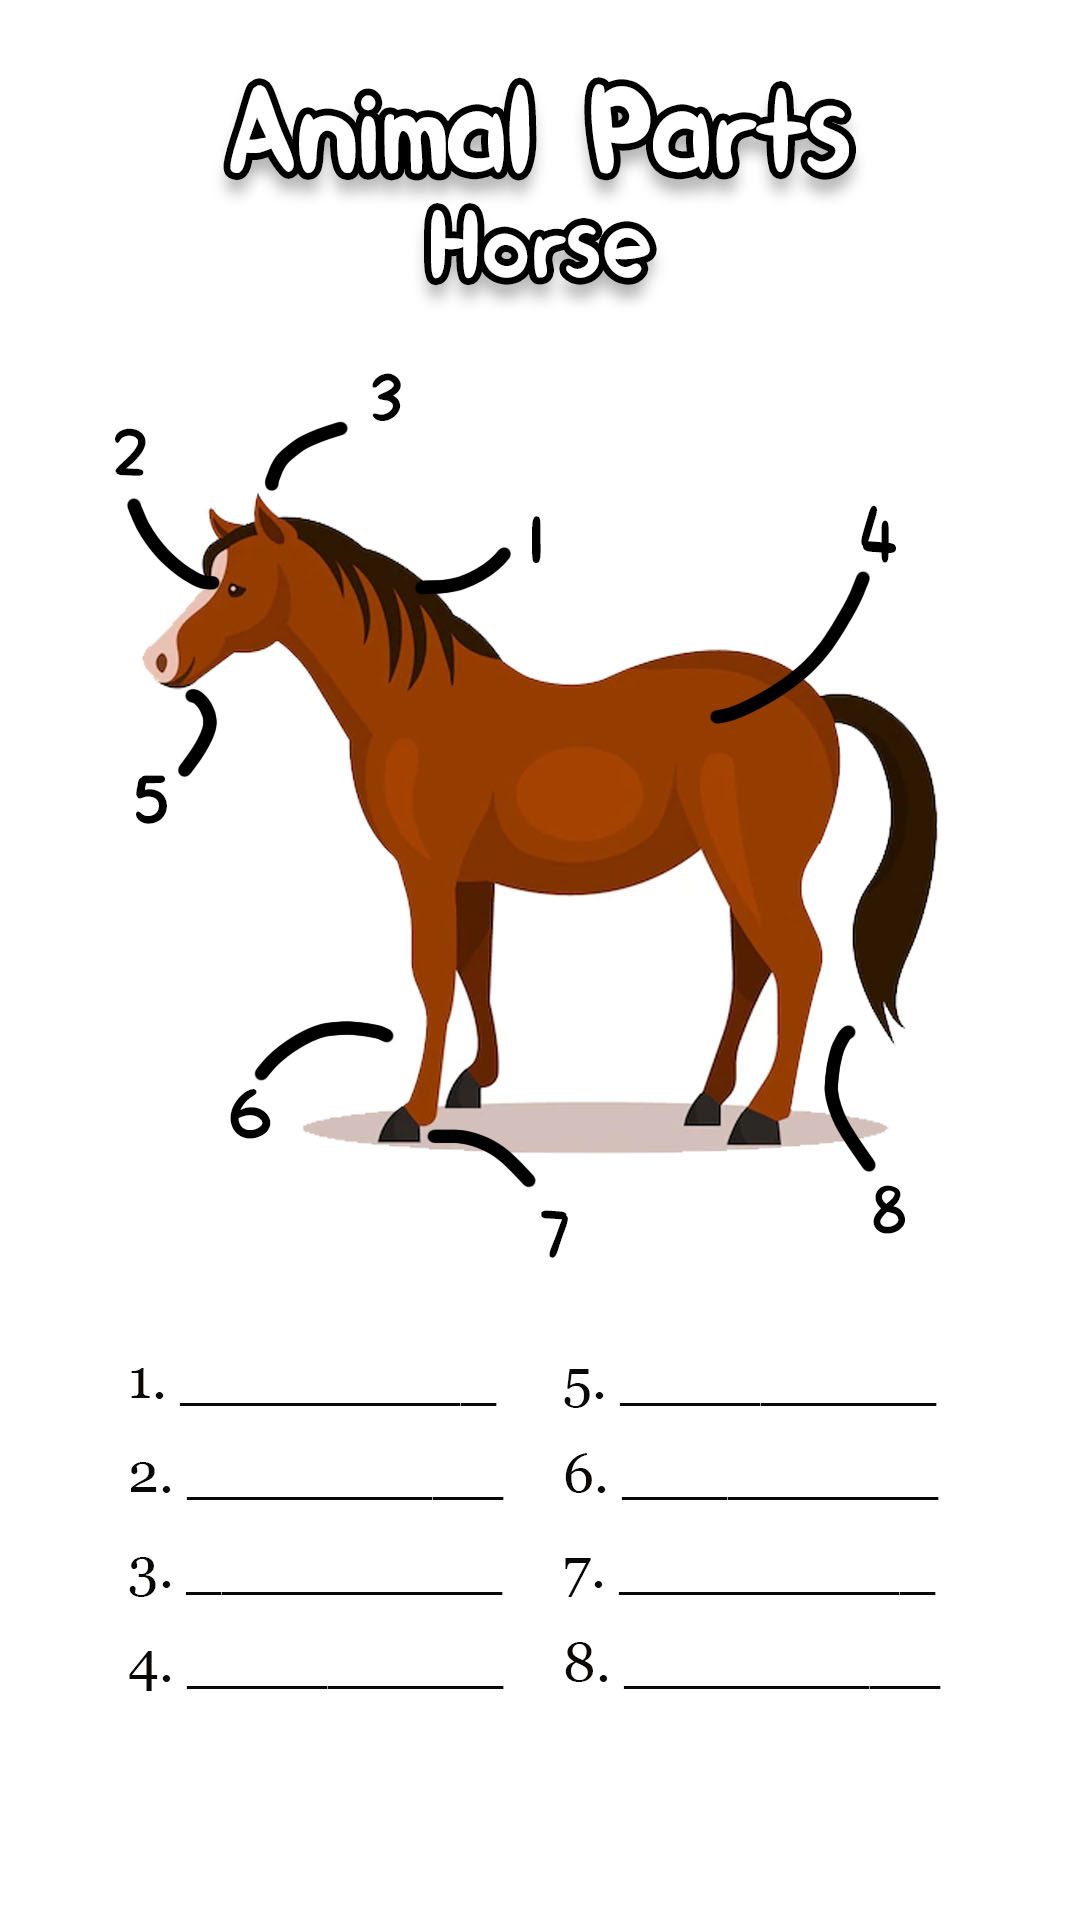 Horse Body Parts Worksheet Image